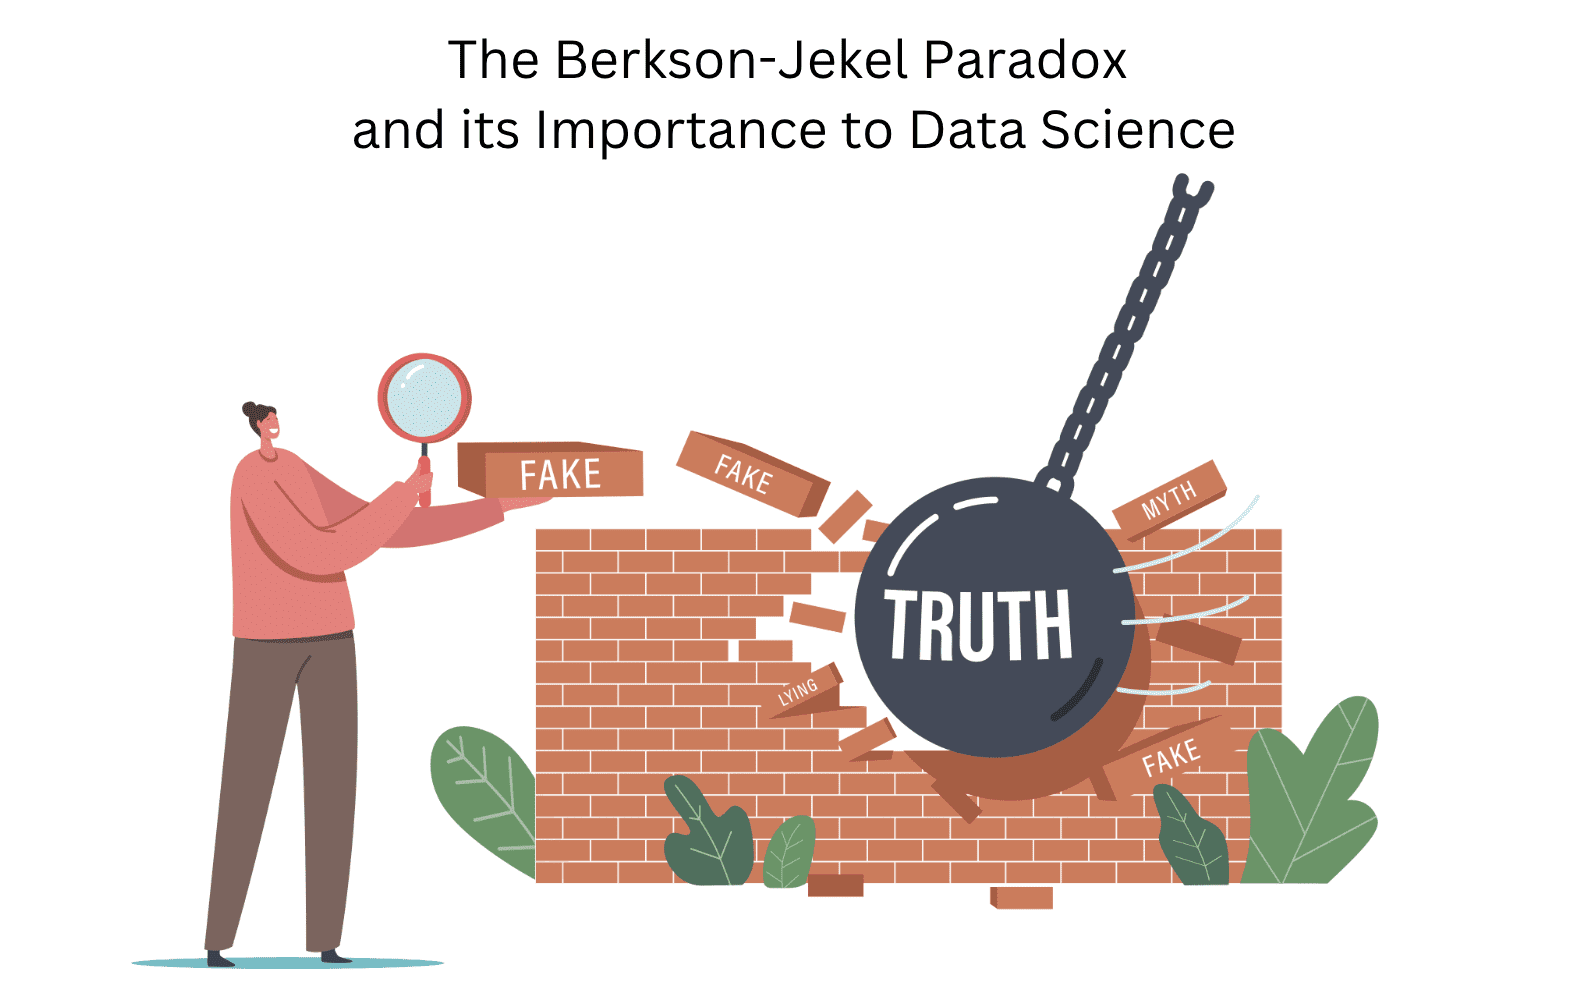 Le paradoxe de Berkson-Jekel et son importance pour la science des données